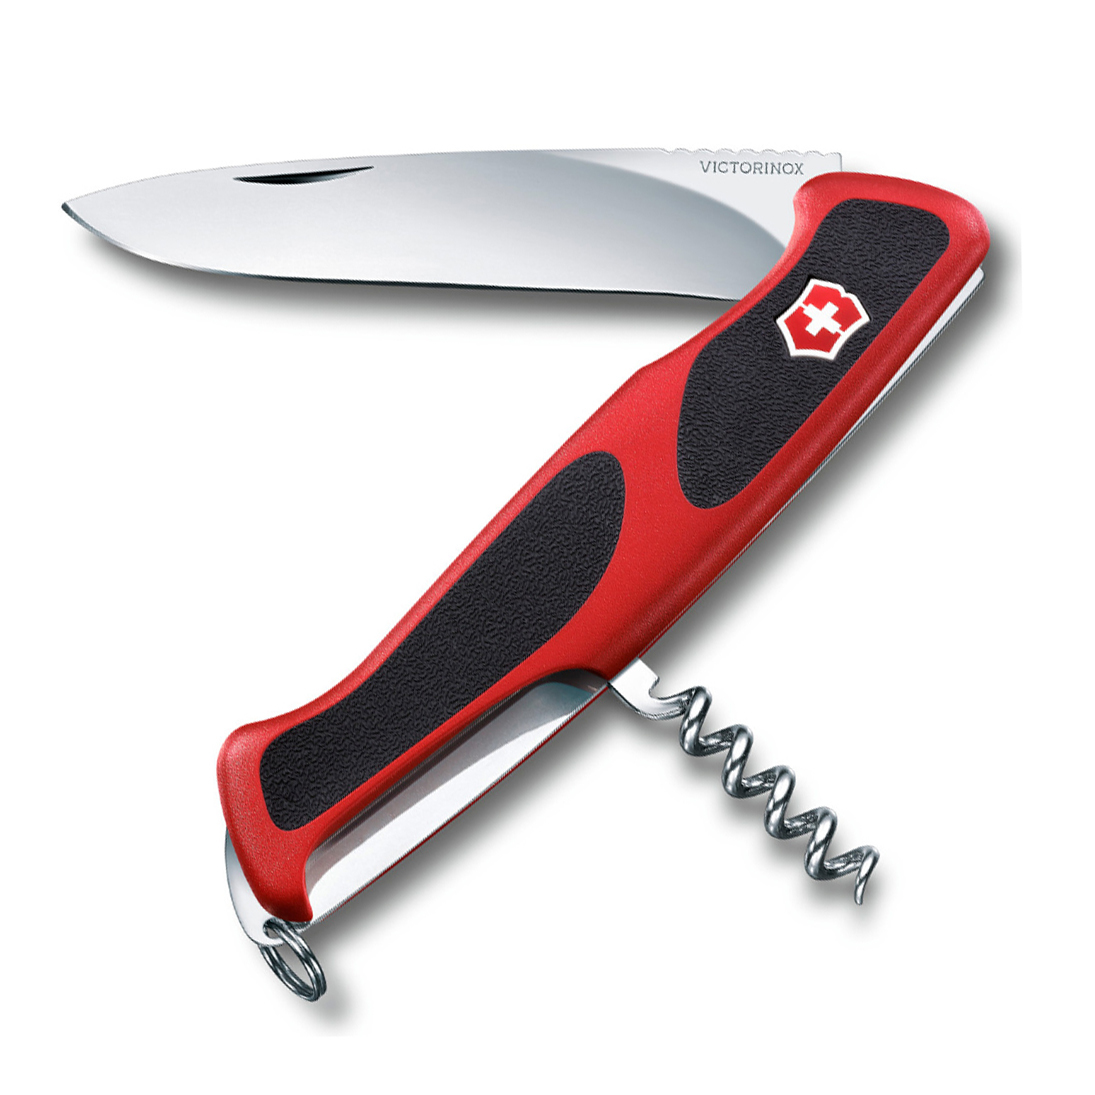 Нож перочинный Victorinox RangerGrip 52, сталь X55CrMo14, рукоять полиамид, красно-чёрный нож перочинный victorinox trailmaster 0 8461 mwc941 10 функций